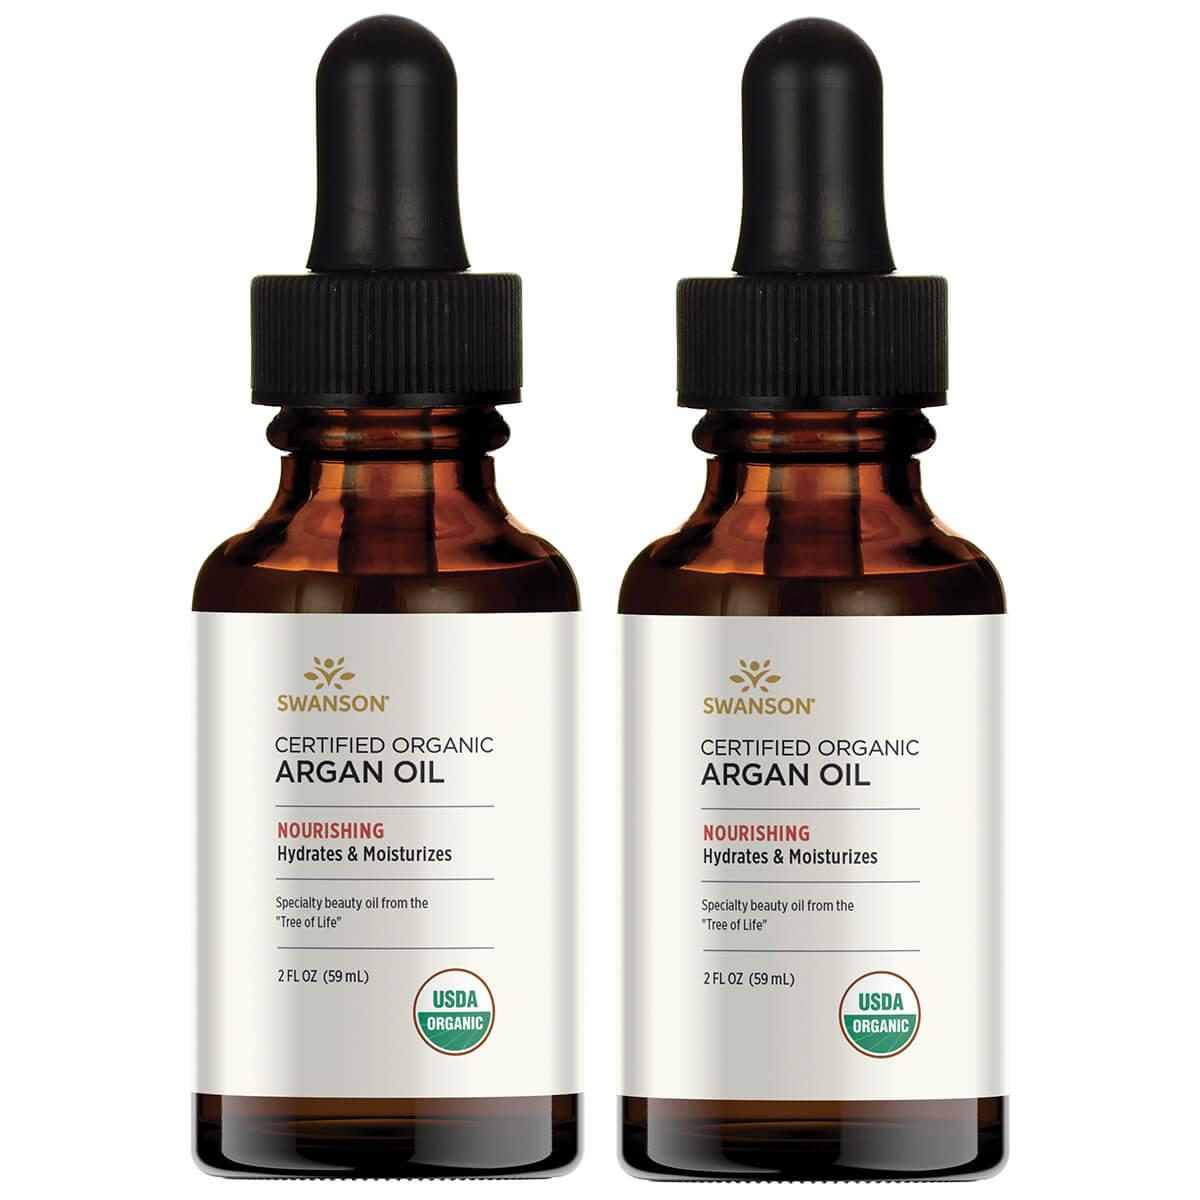 Swanson Premium Certified Organic Argan Oil 2 Pack 2 fl oz Liquid